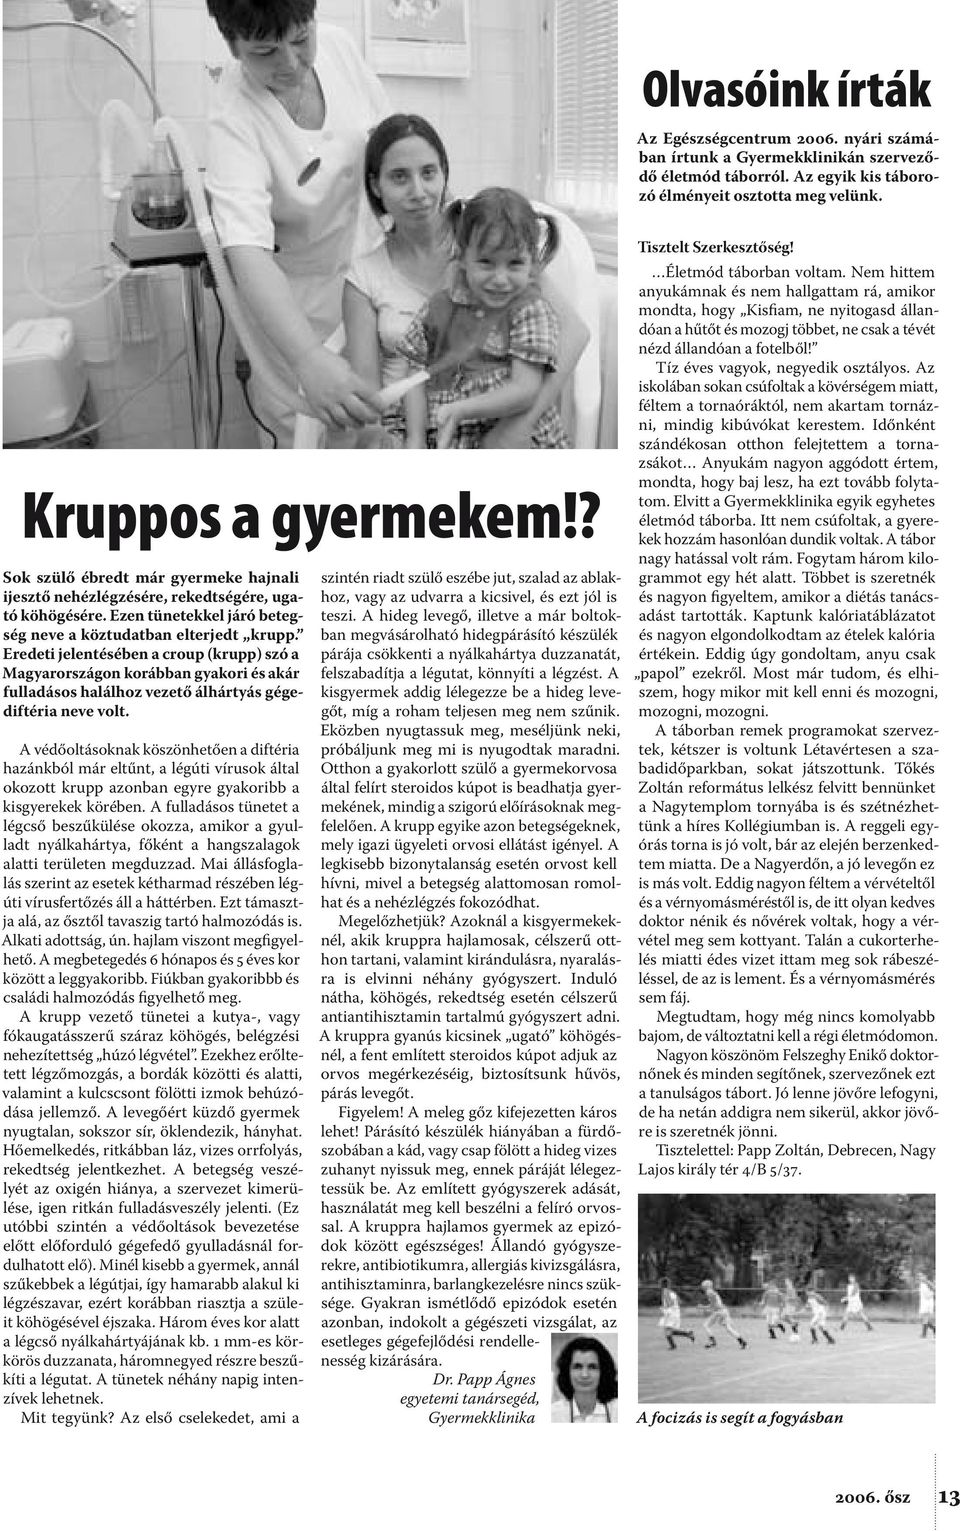 Eredeti jelentésében a croup (krupp) szó a Magyarországon korábban gyakori és akár fulladásos halálhoz vezető álhártyás gégediftéria neve volt.